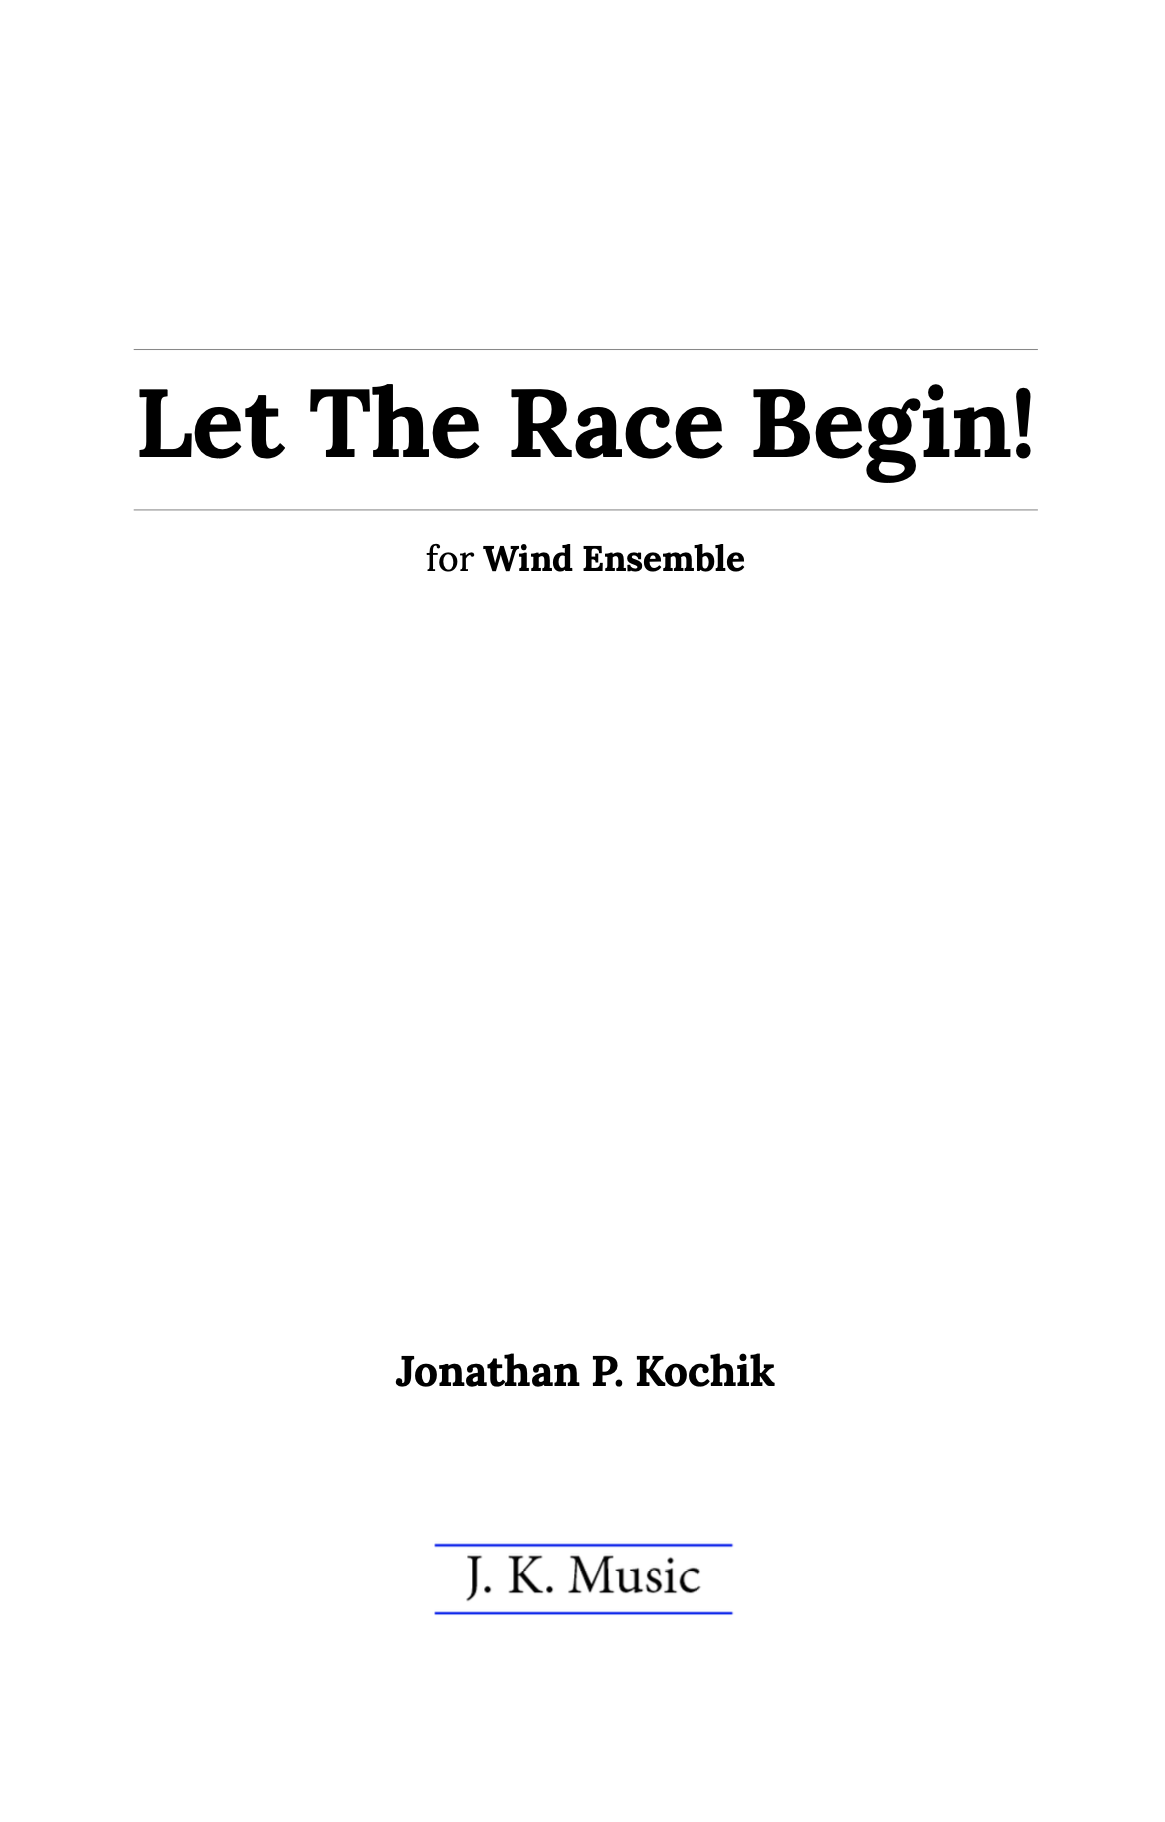 Let The Race Begin (Score Only) by Jonathan Kochik